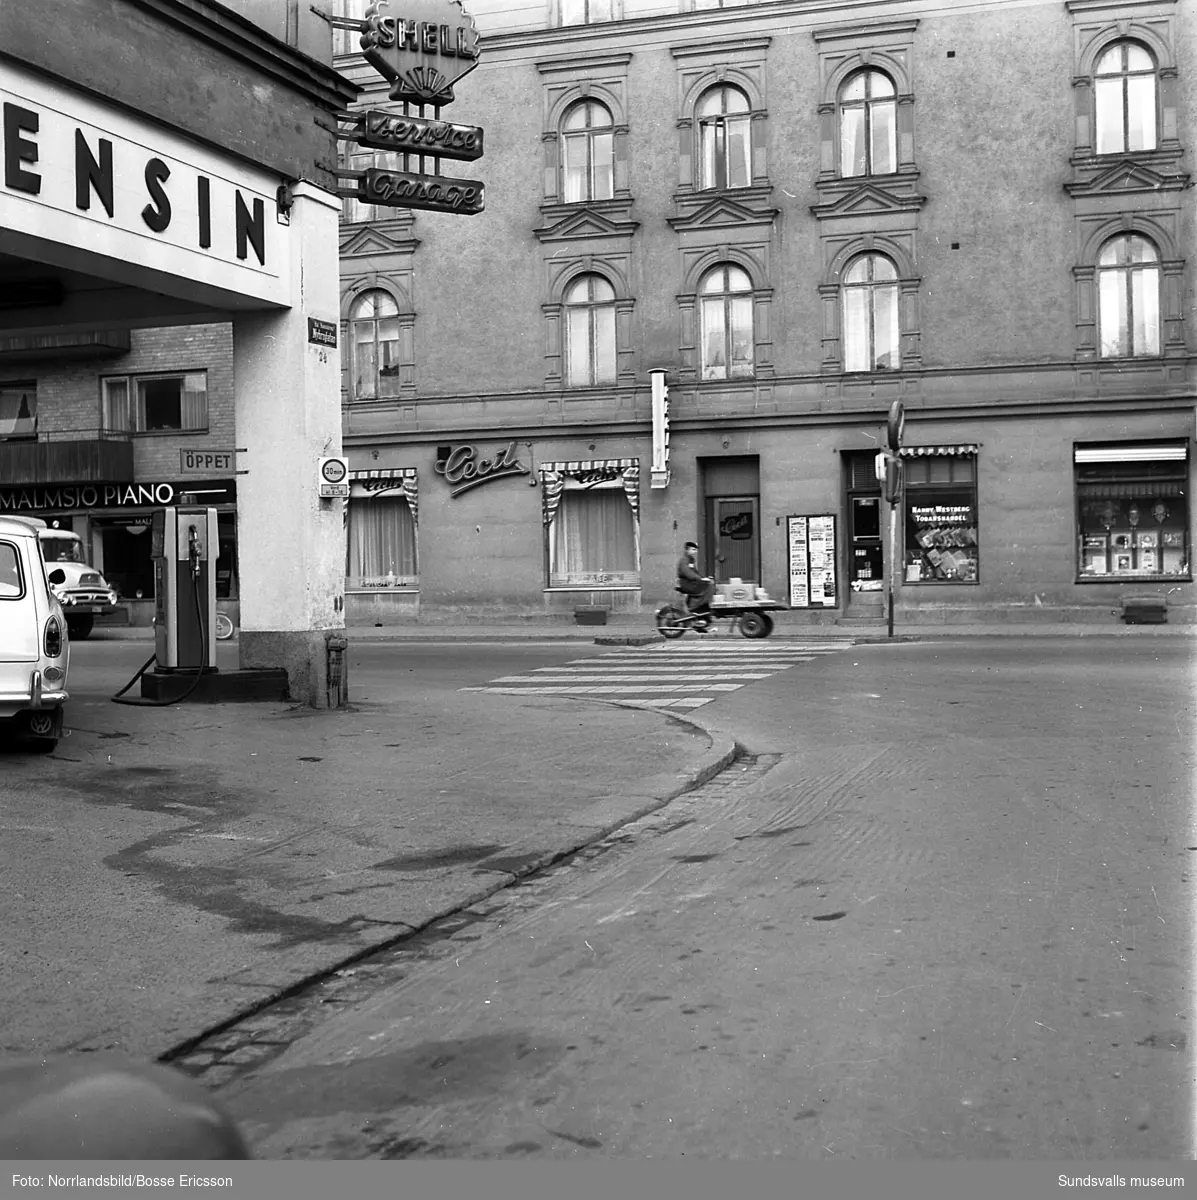 Gatuvyer i korsningen Köpmangatan-Nybrogatan med Shellmacken i hörnet, Cecil, Malmsjö piano med flera butiker.